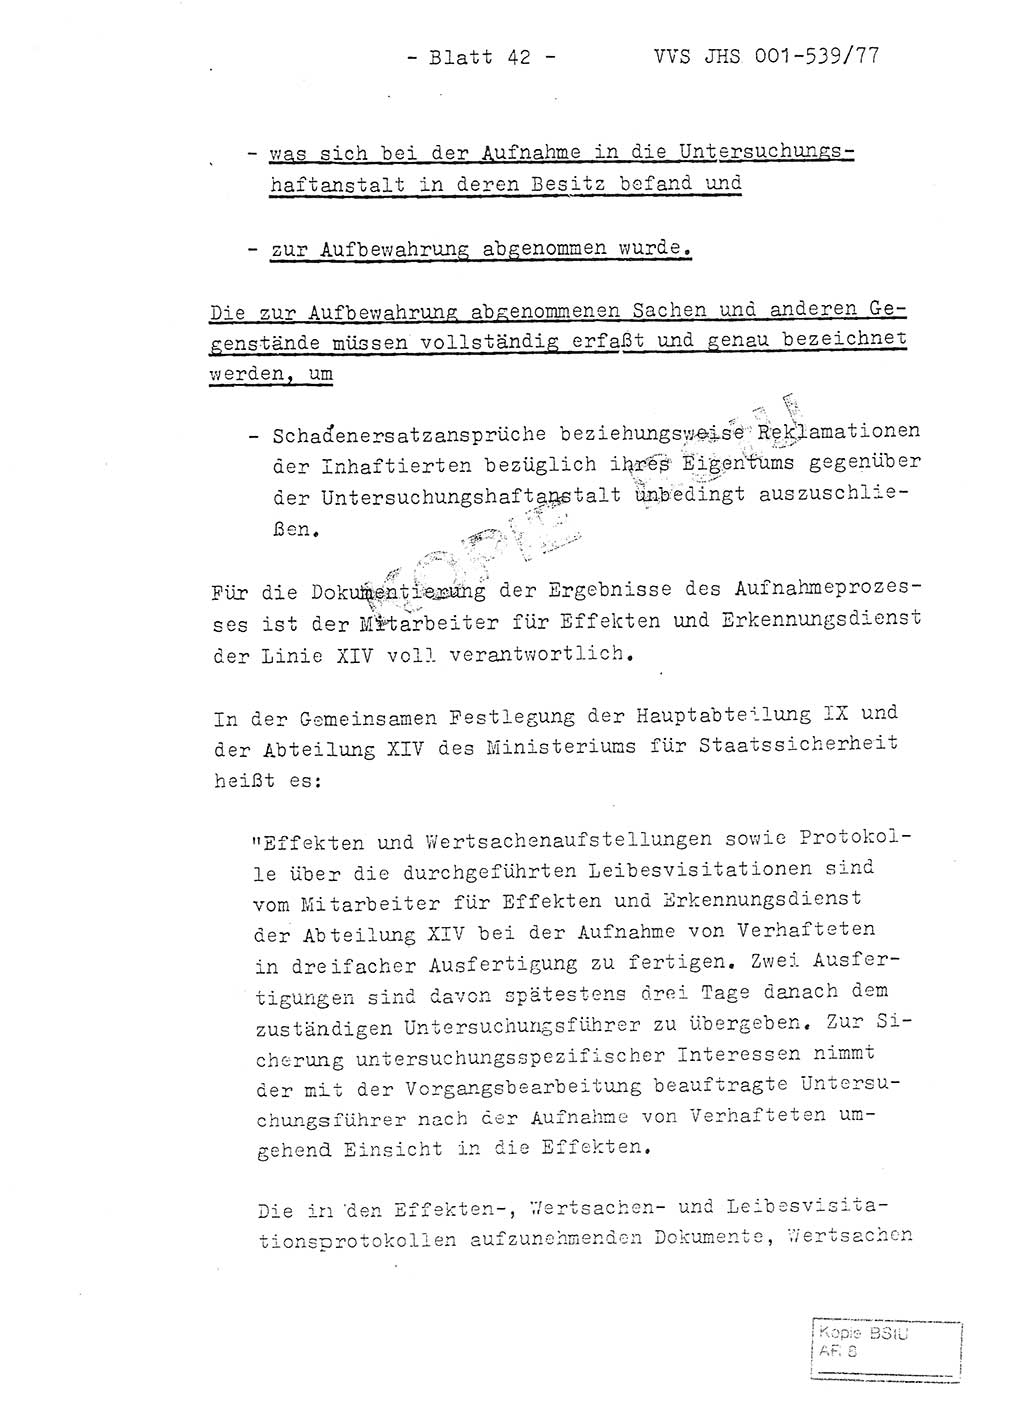 Fachschulabschlußarbeit Hauptmann Dietrich Jung (Abt. ⅩⅣ), Leutnant Klaus Klötzner (Abt. ⅩⅣ), Ministerium für Staatssicherheit (MfS) [Deutsche Demokratische Republik (DDR)], Juristische Hochschule (JHS), Vertrauliche Verschlußsache (VVS) 001-539/77, Potsdam 1978, Seite 42 (FS-Abschl.-Arb. MfS DDR JHS VVS 001-539/77 1978, S. 42)